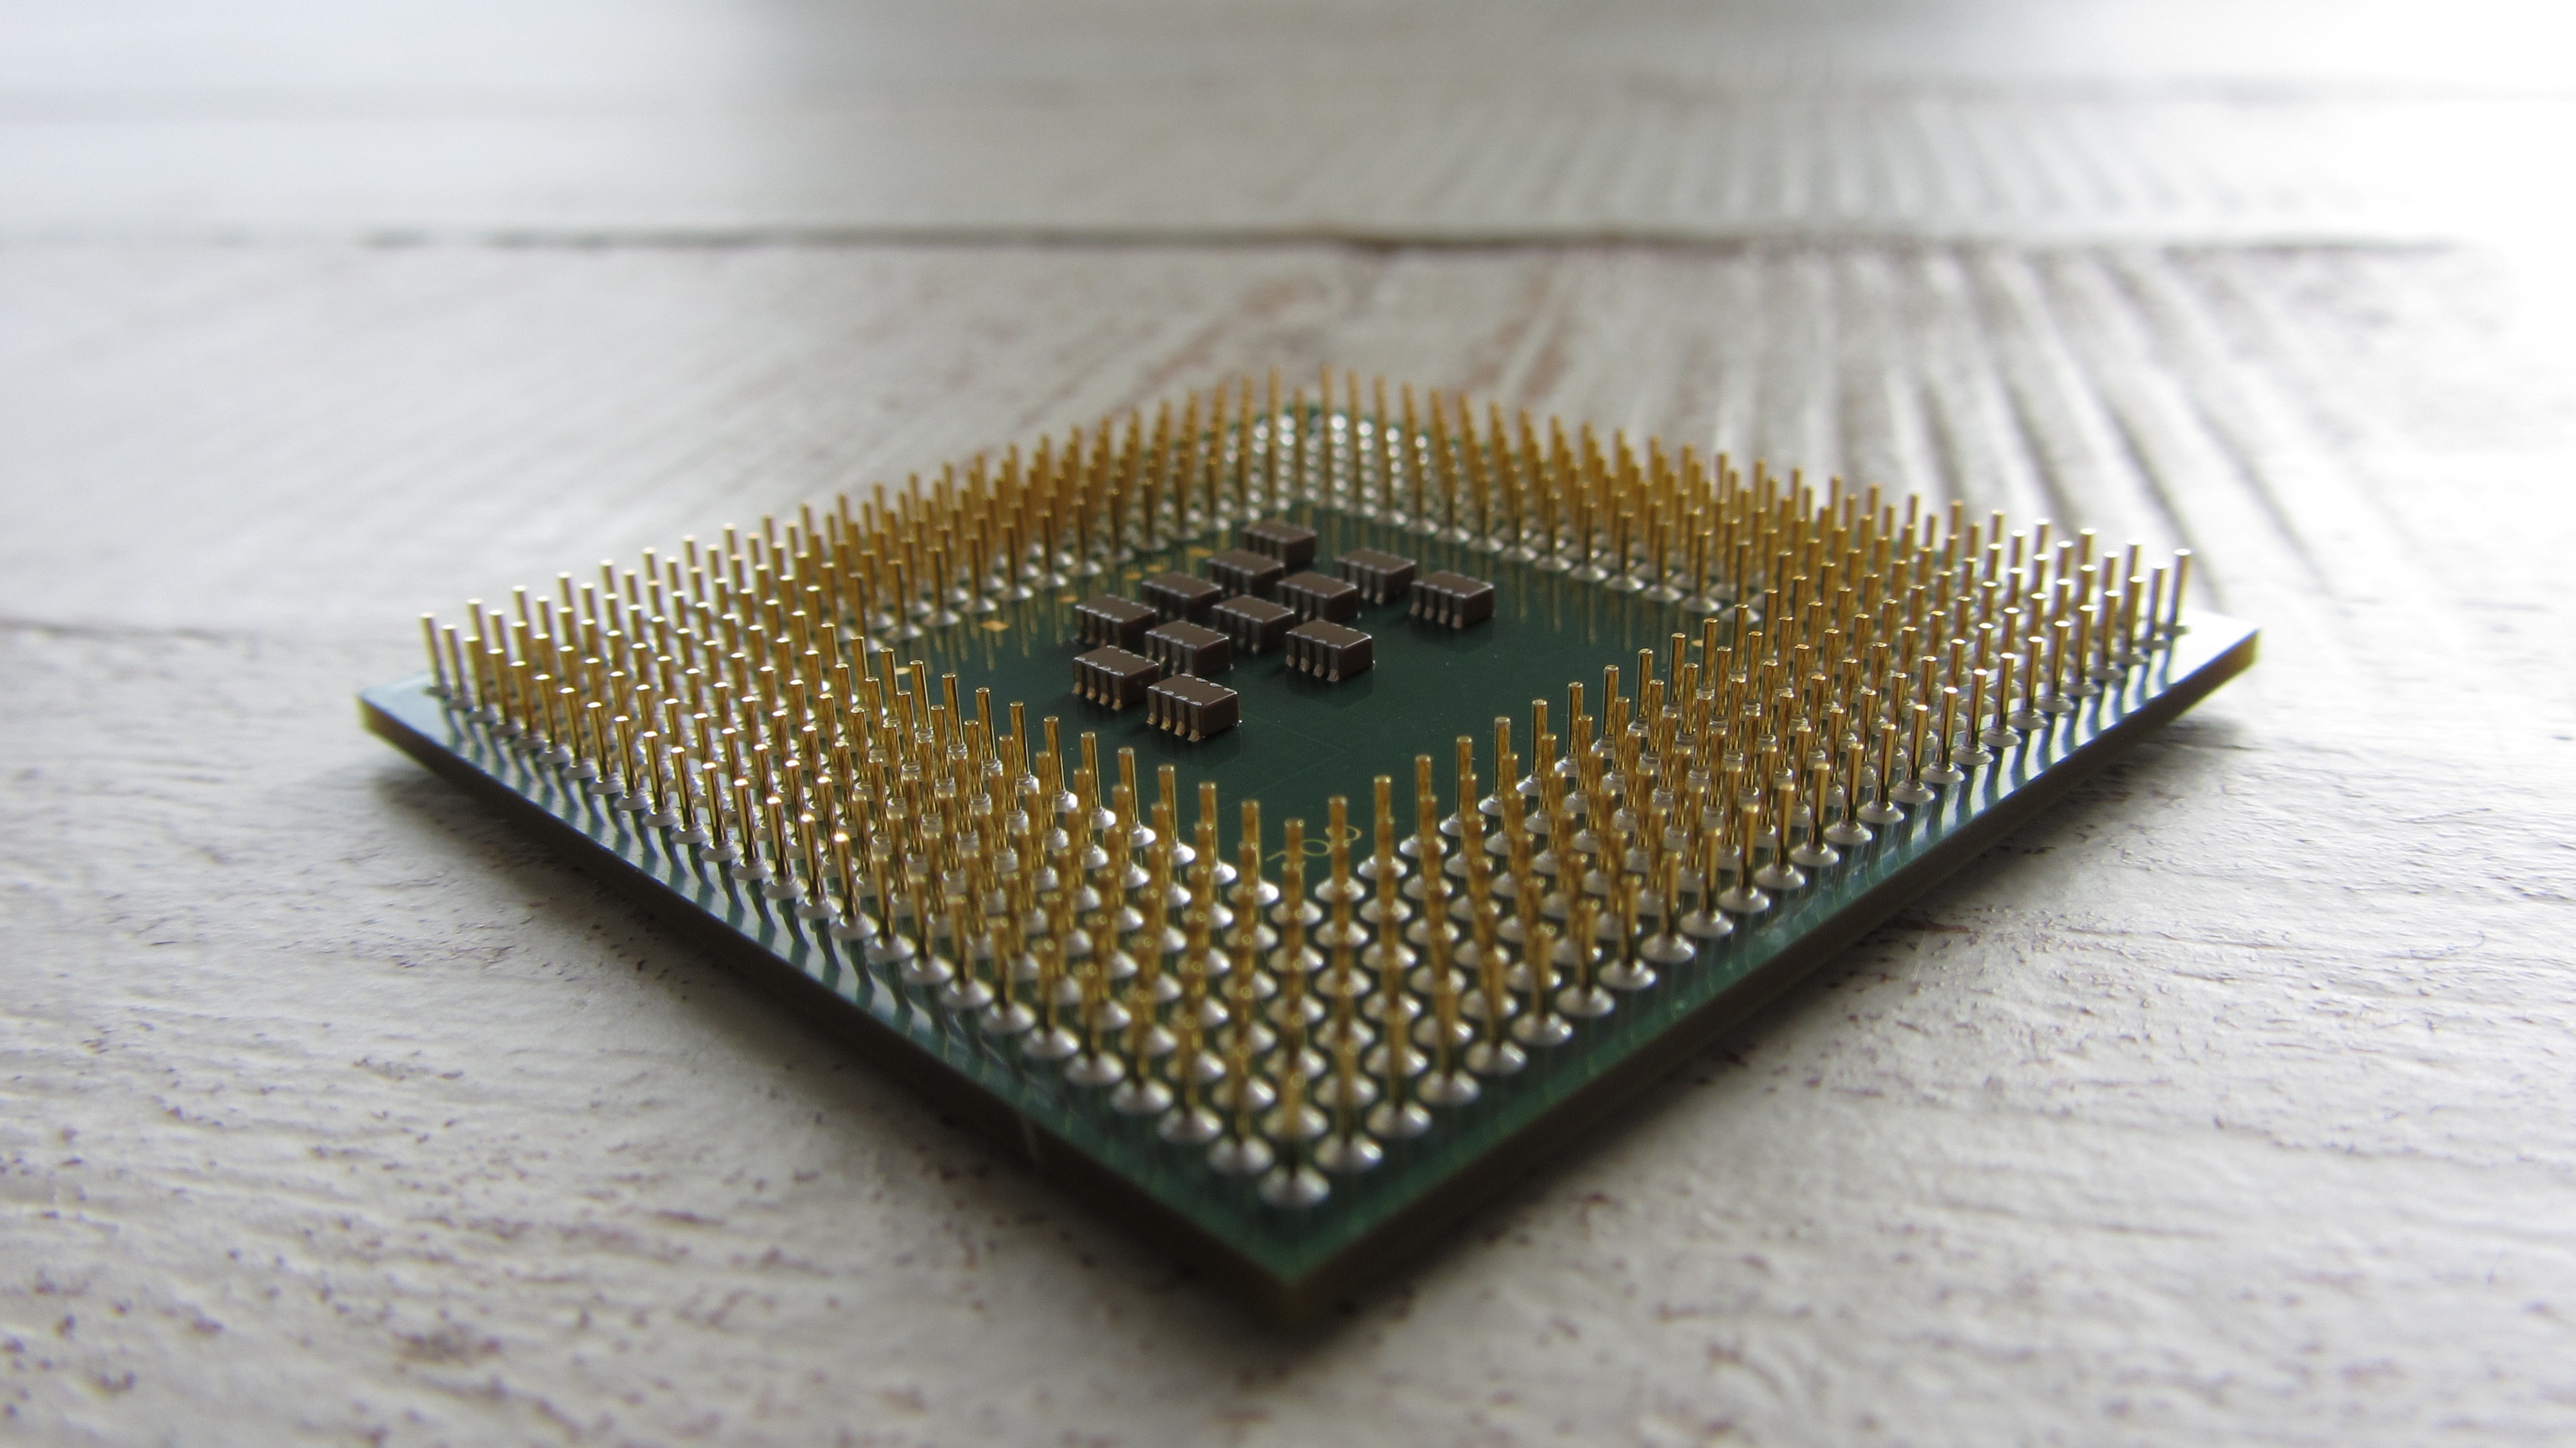 biologie leerling Geweldige eik A major kernel vulnerability is going to slow down all Intel processors |  TechCrunch